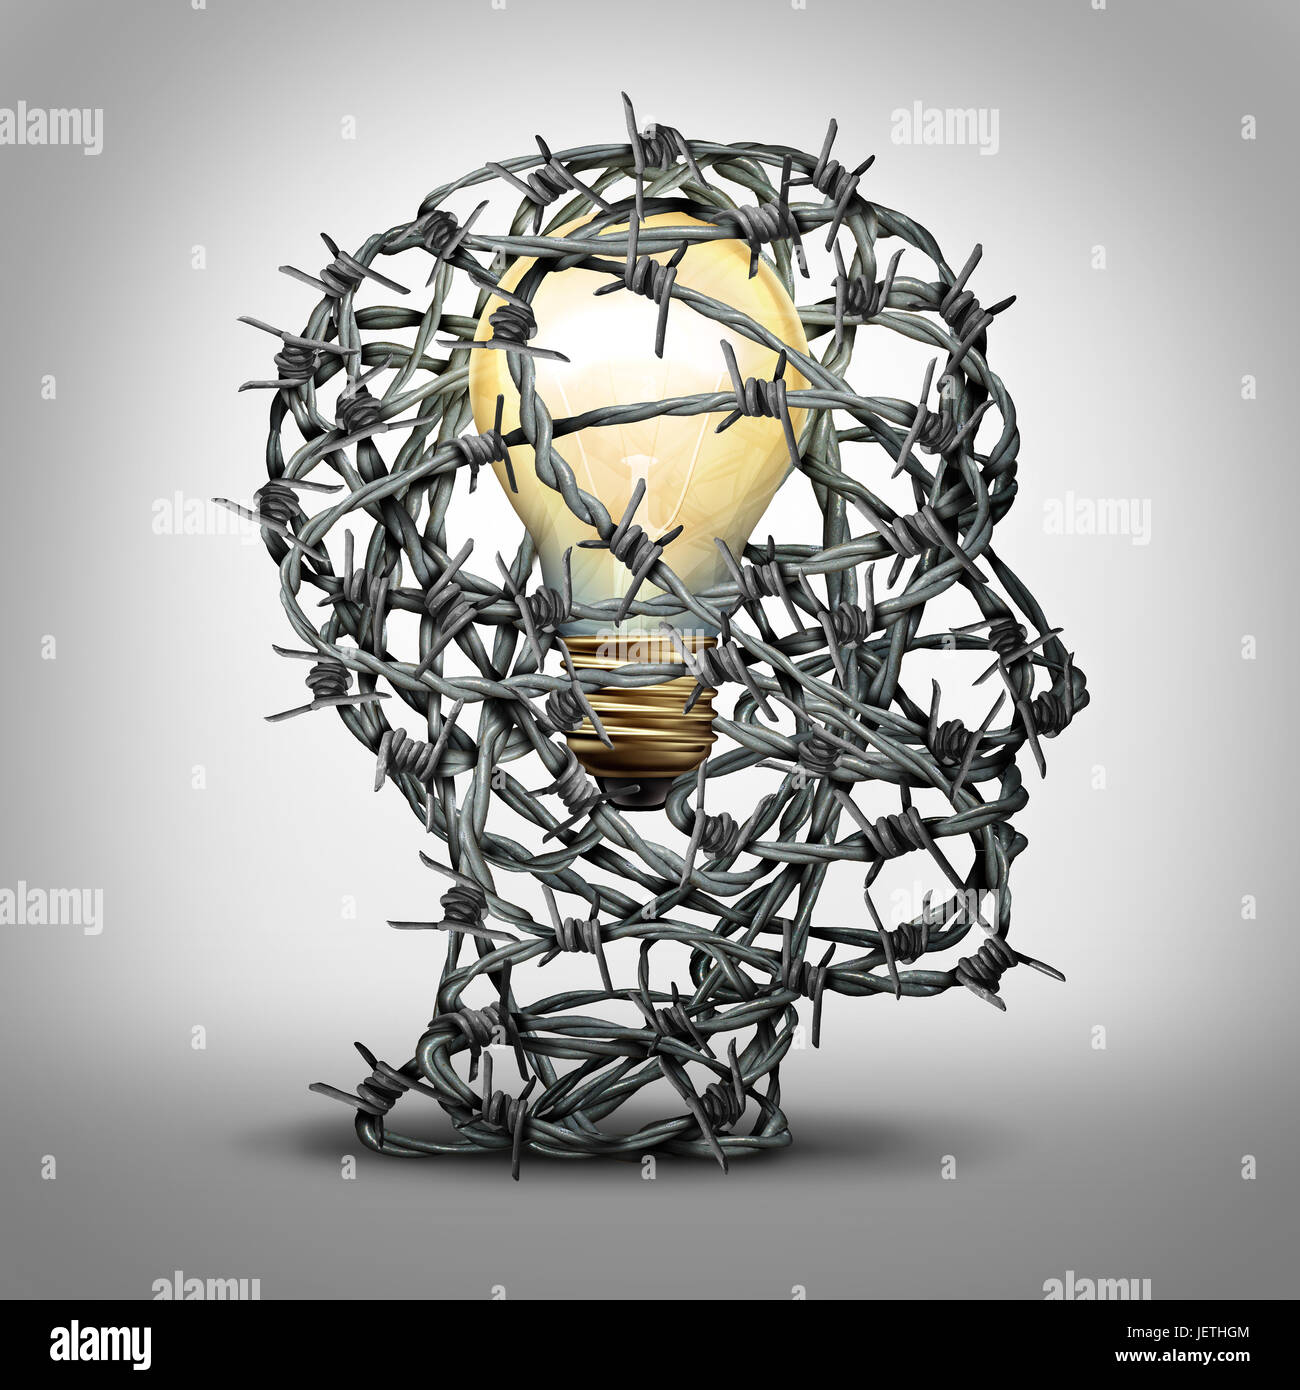 Schützen Sie Ihre Idee denken Geschäftskonzept als eine Gruppe von Stacheldraht in Form eines menschlichen Kopfes mit einer beleuchteten Glühbirne im Inneren als Sicherheit. Stockfoto